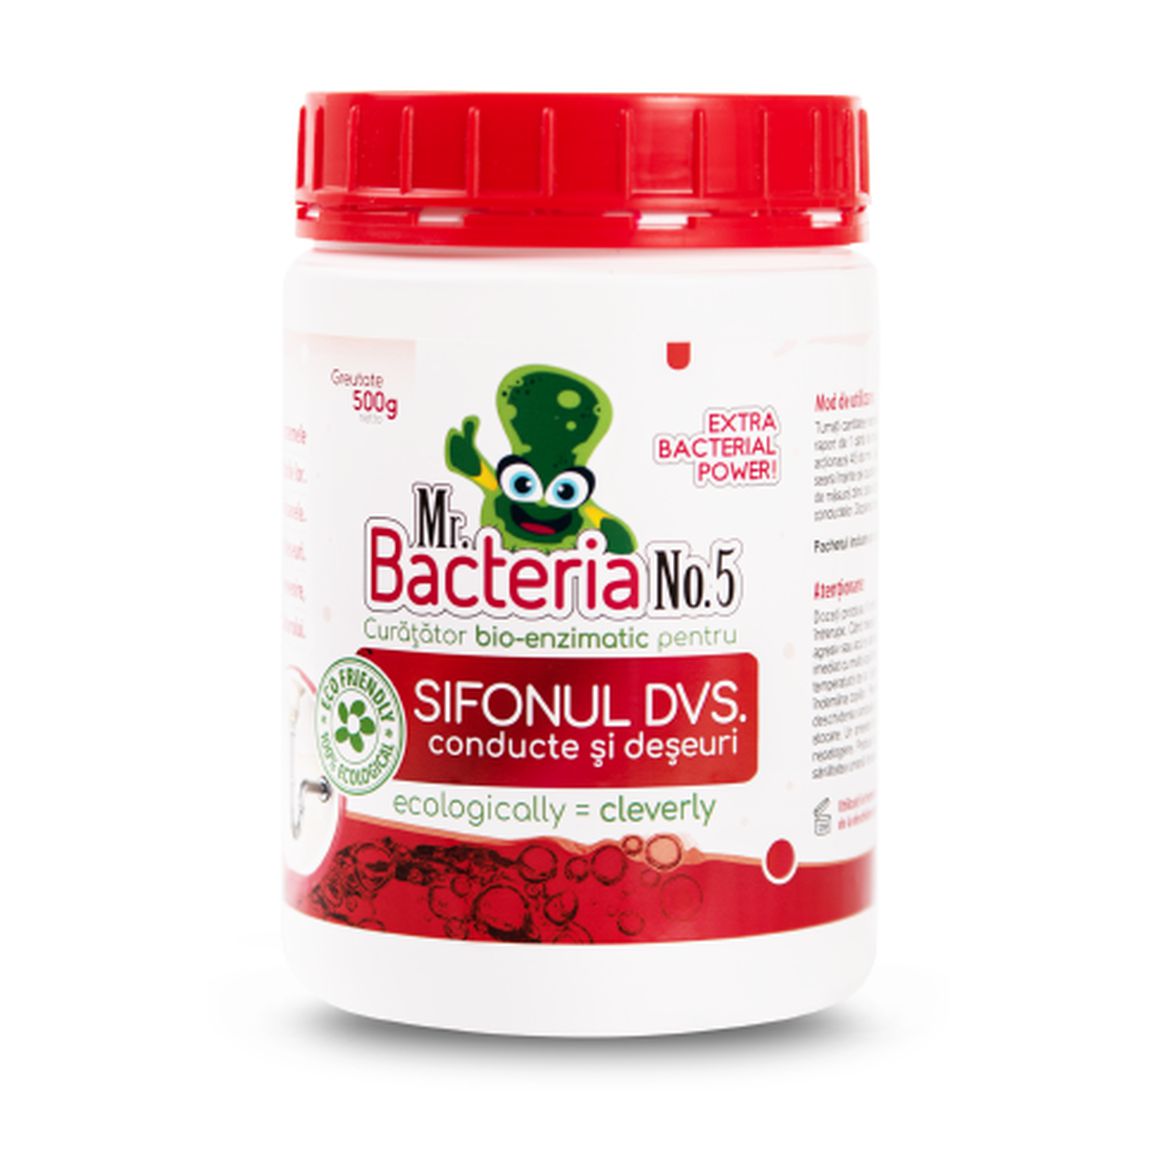 Mr.Bacteria No.5 Curățător bio-enzimatic pentru